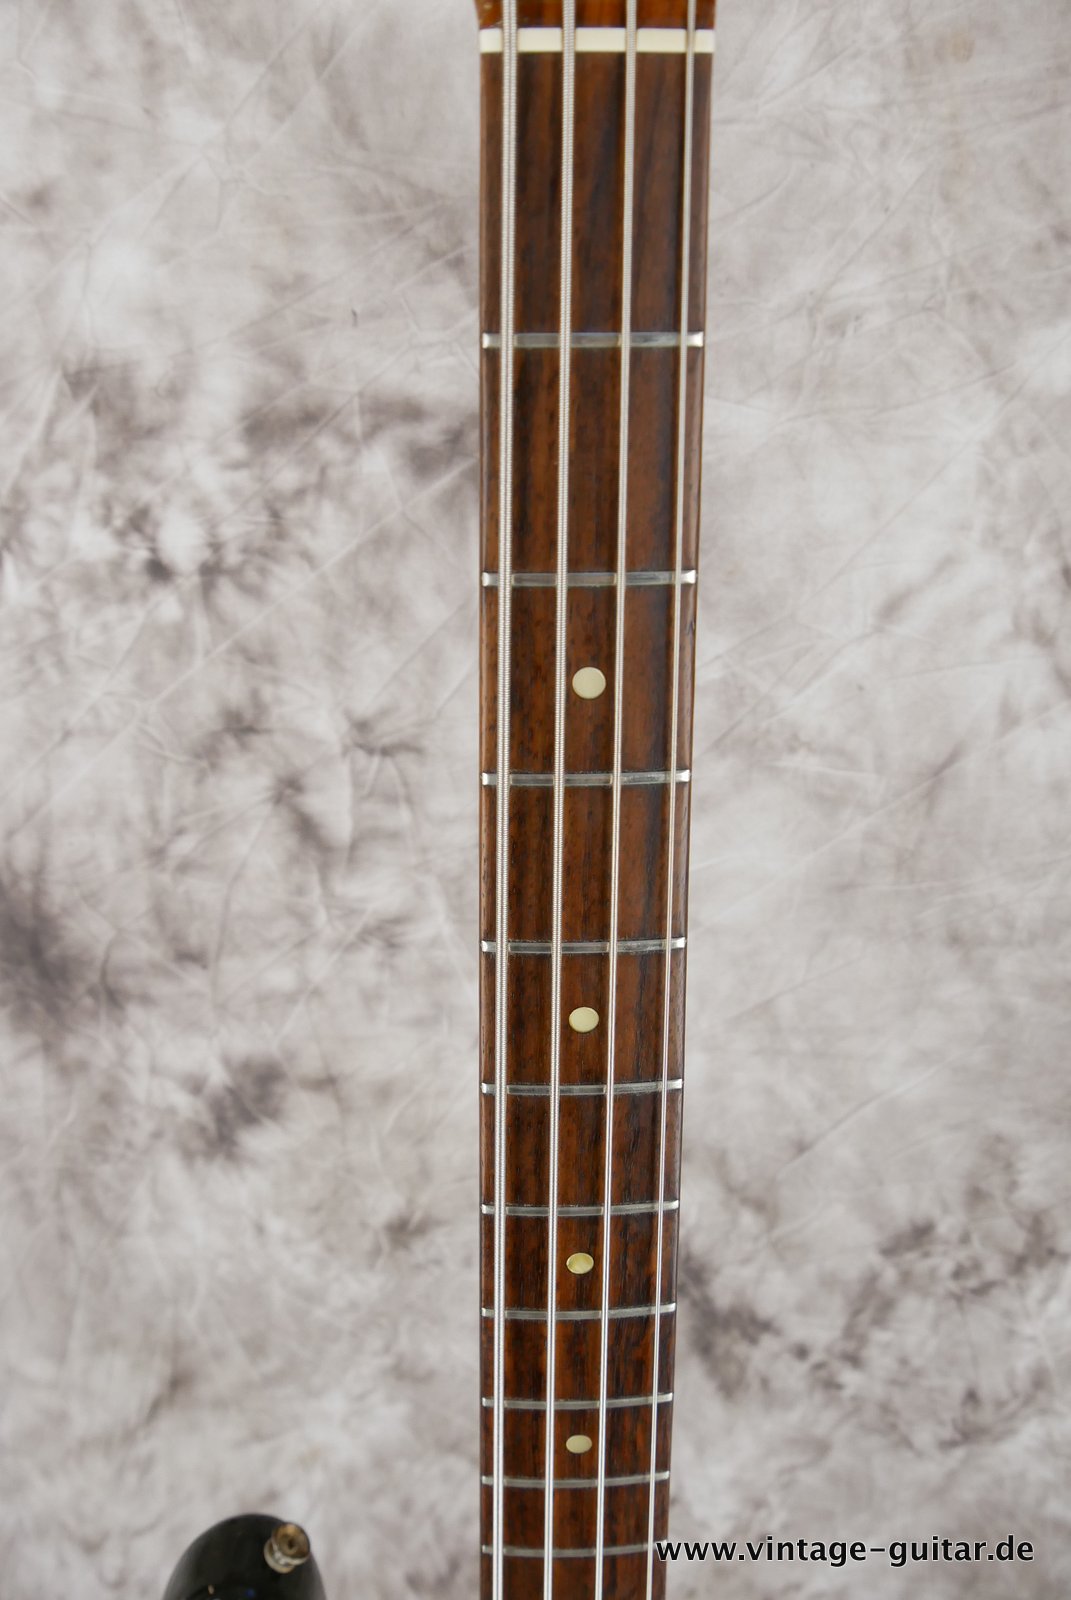 Fender-Precision-Bass-sunburst-1969-011.JPG